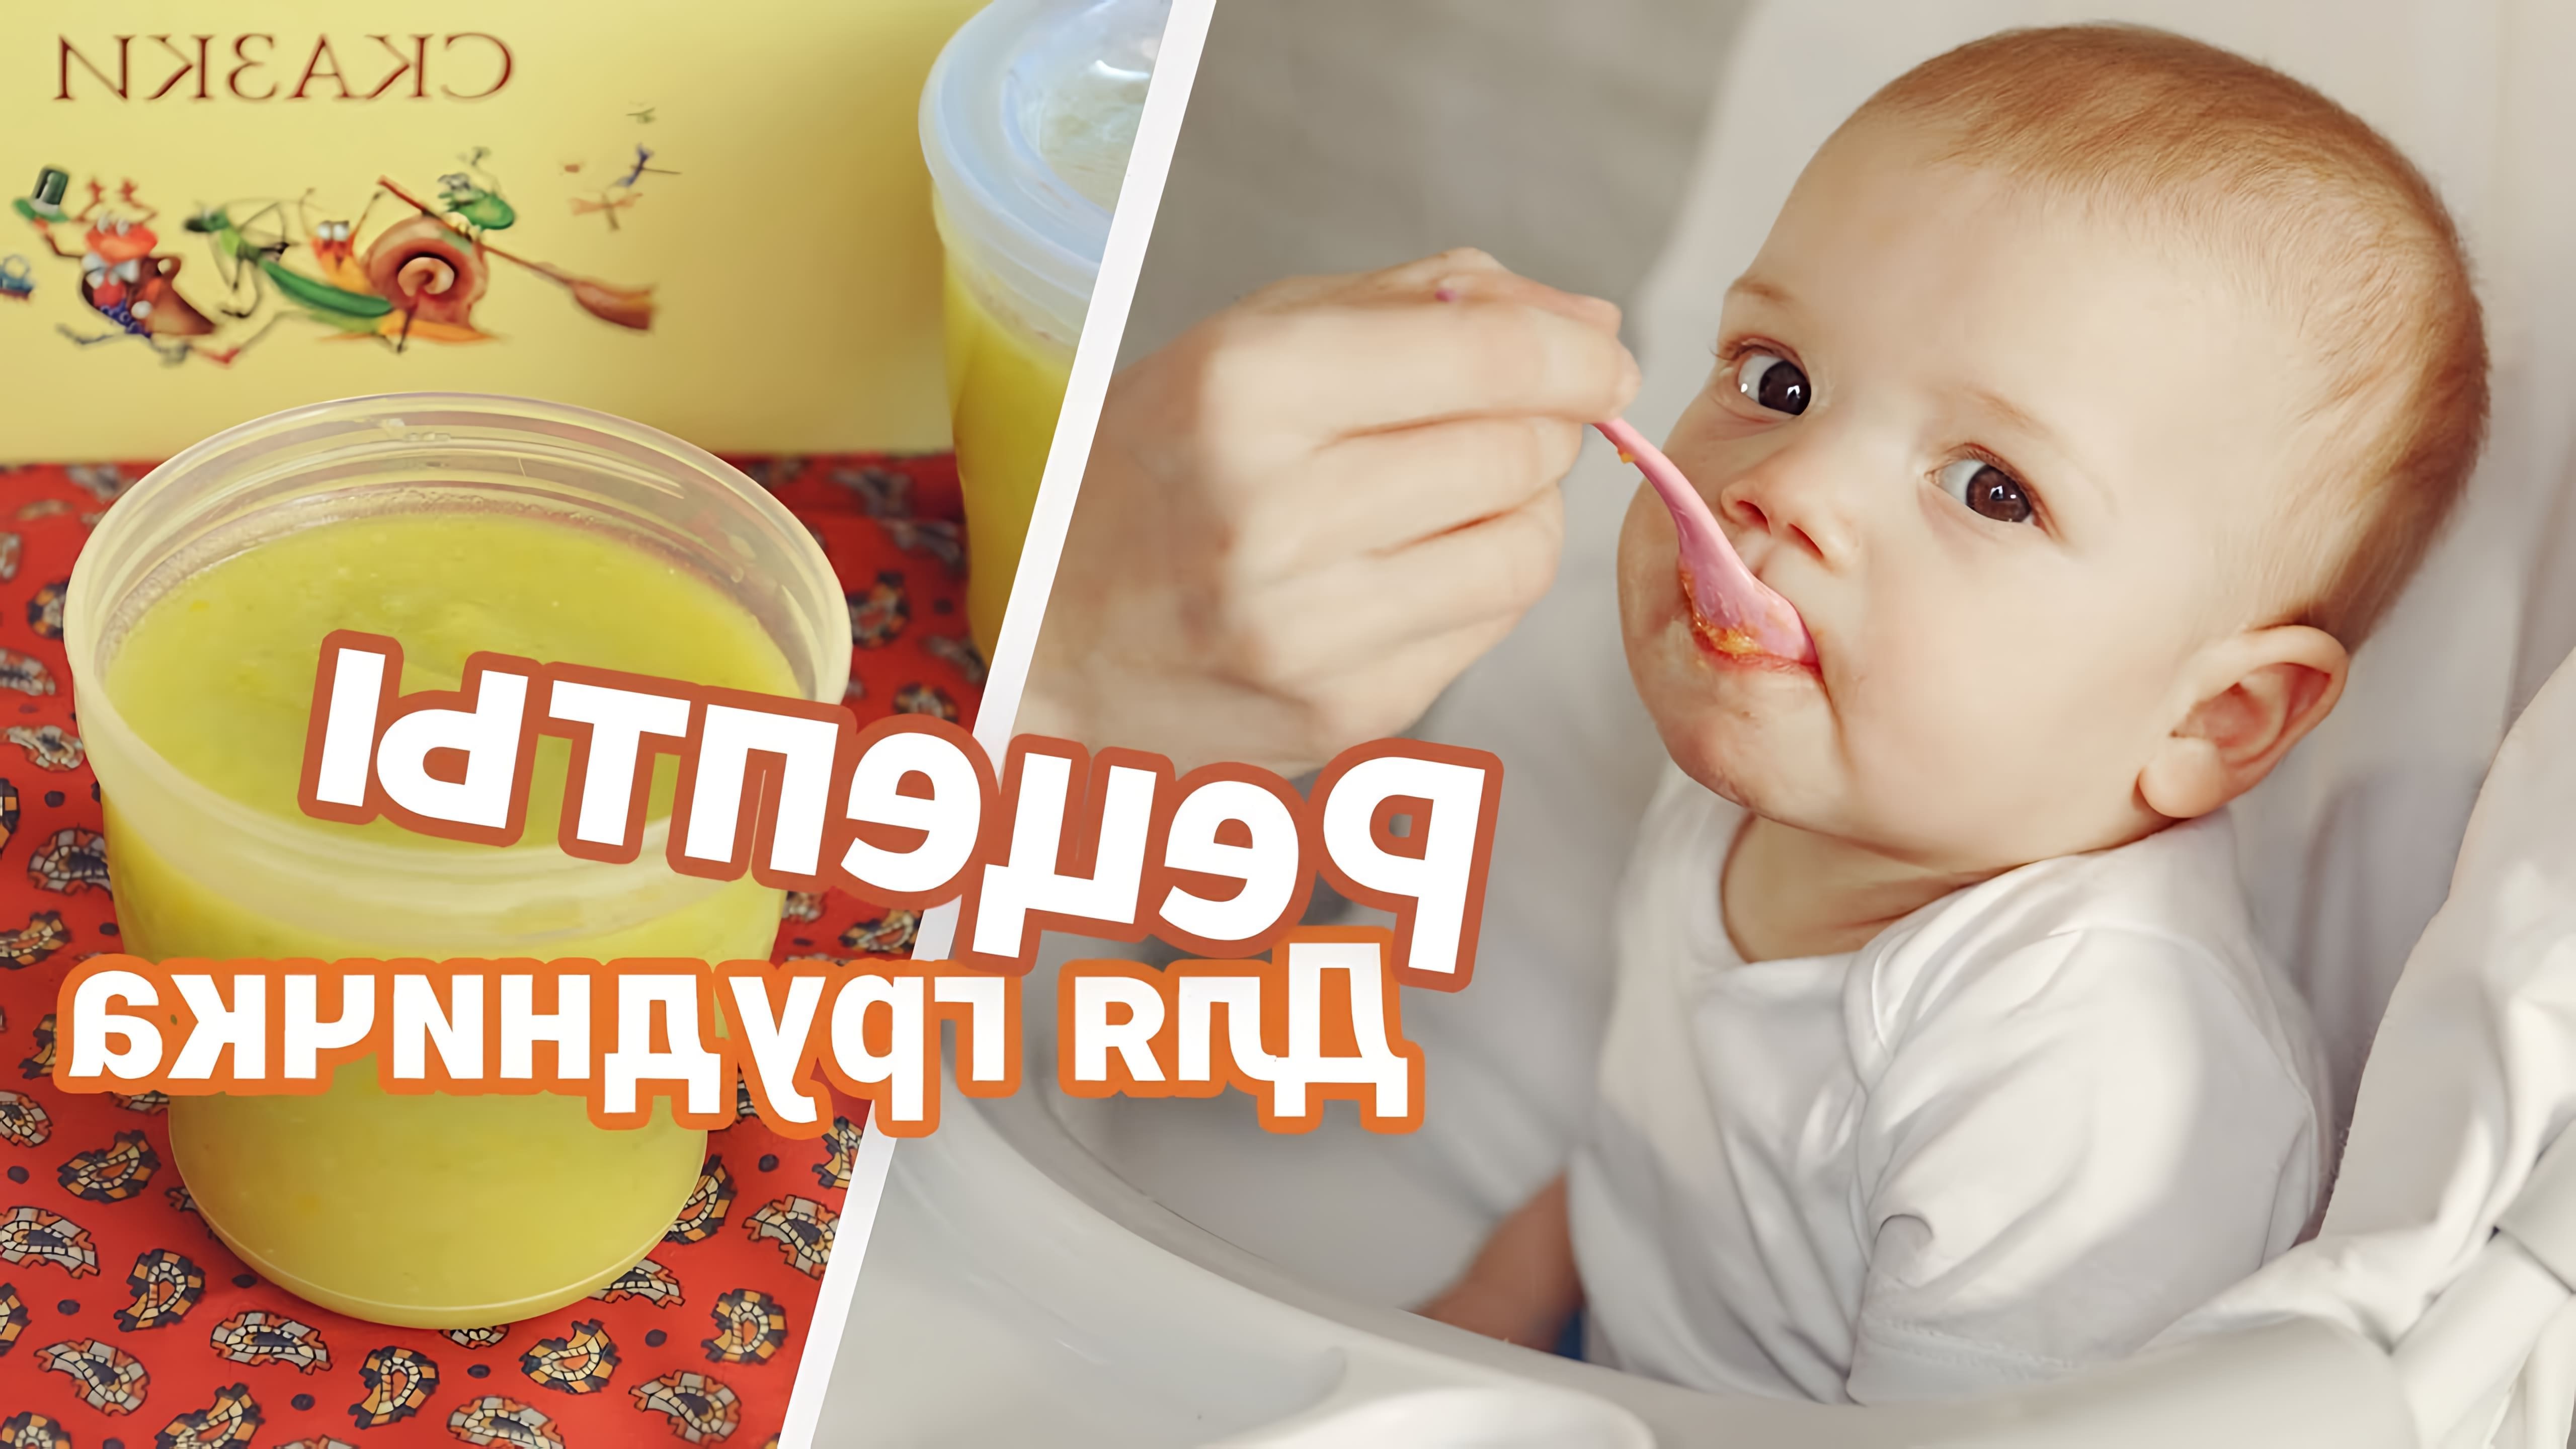 В данном видео рассказывается о введении прикорма для ребенка в возрасте от 6 месяцев